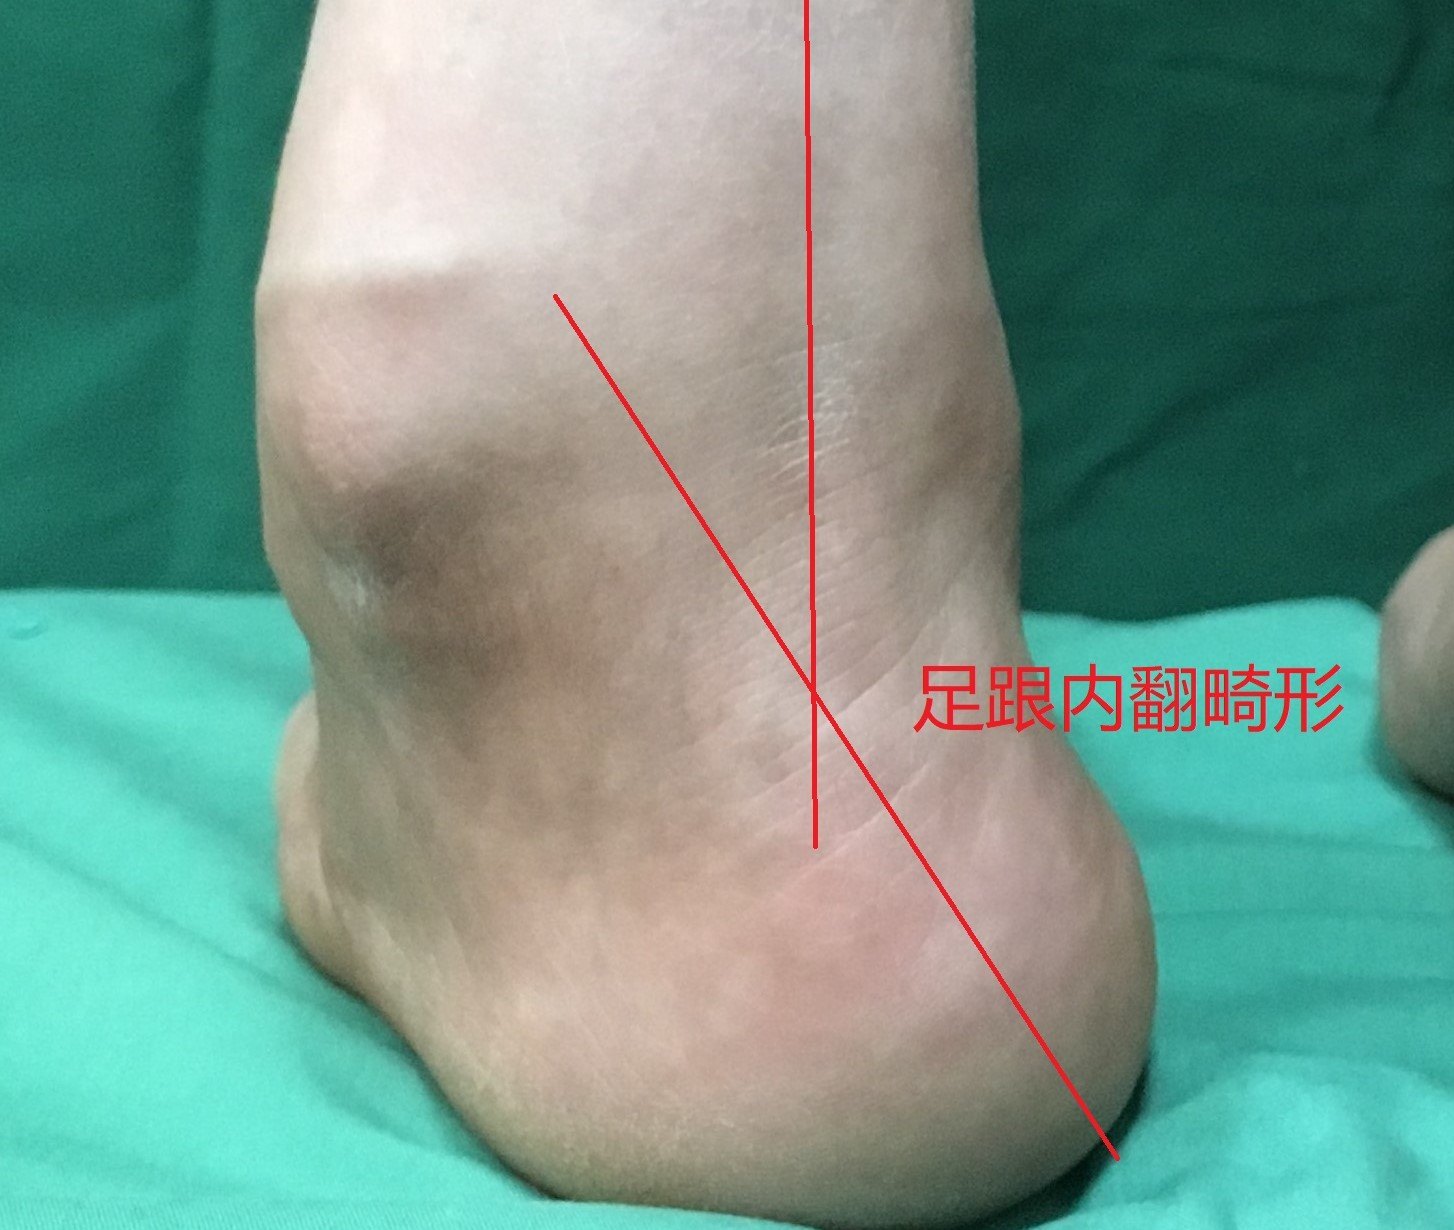 高弓足是指足弓异常增高,负重时足弓无法放平的足部畸形